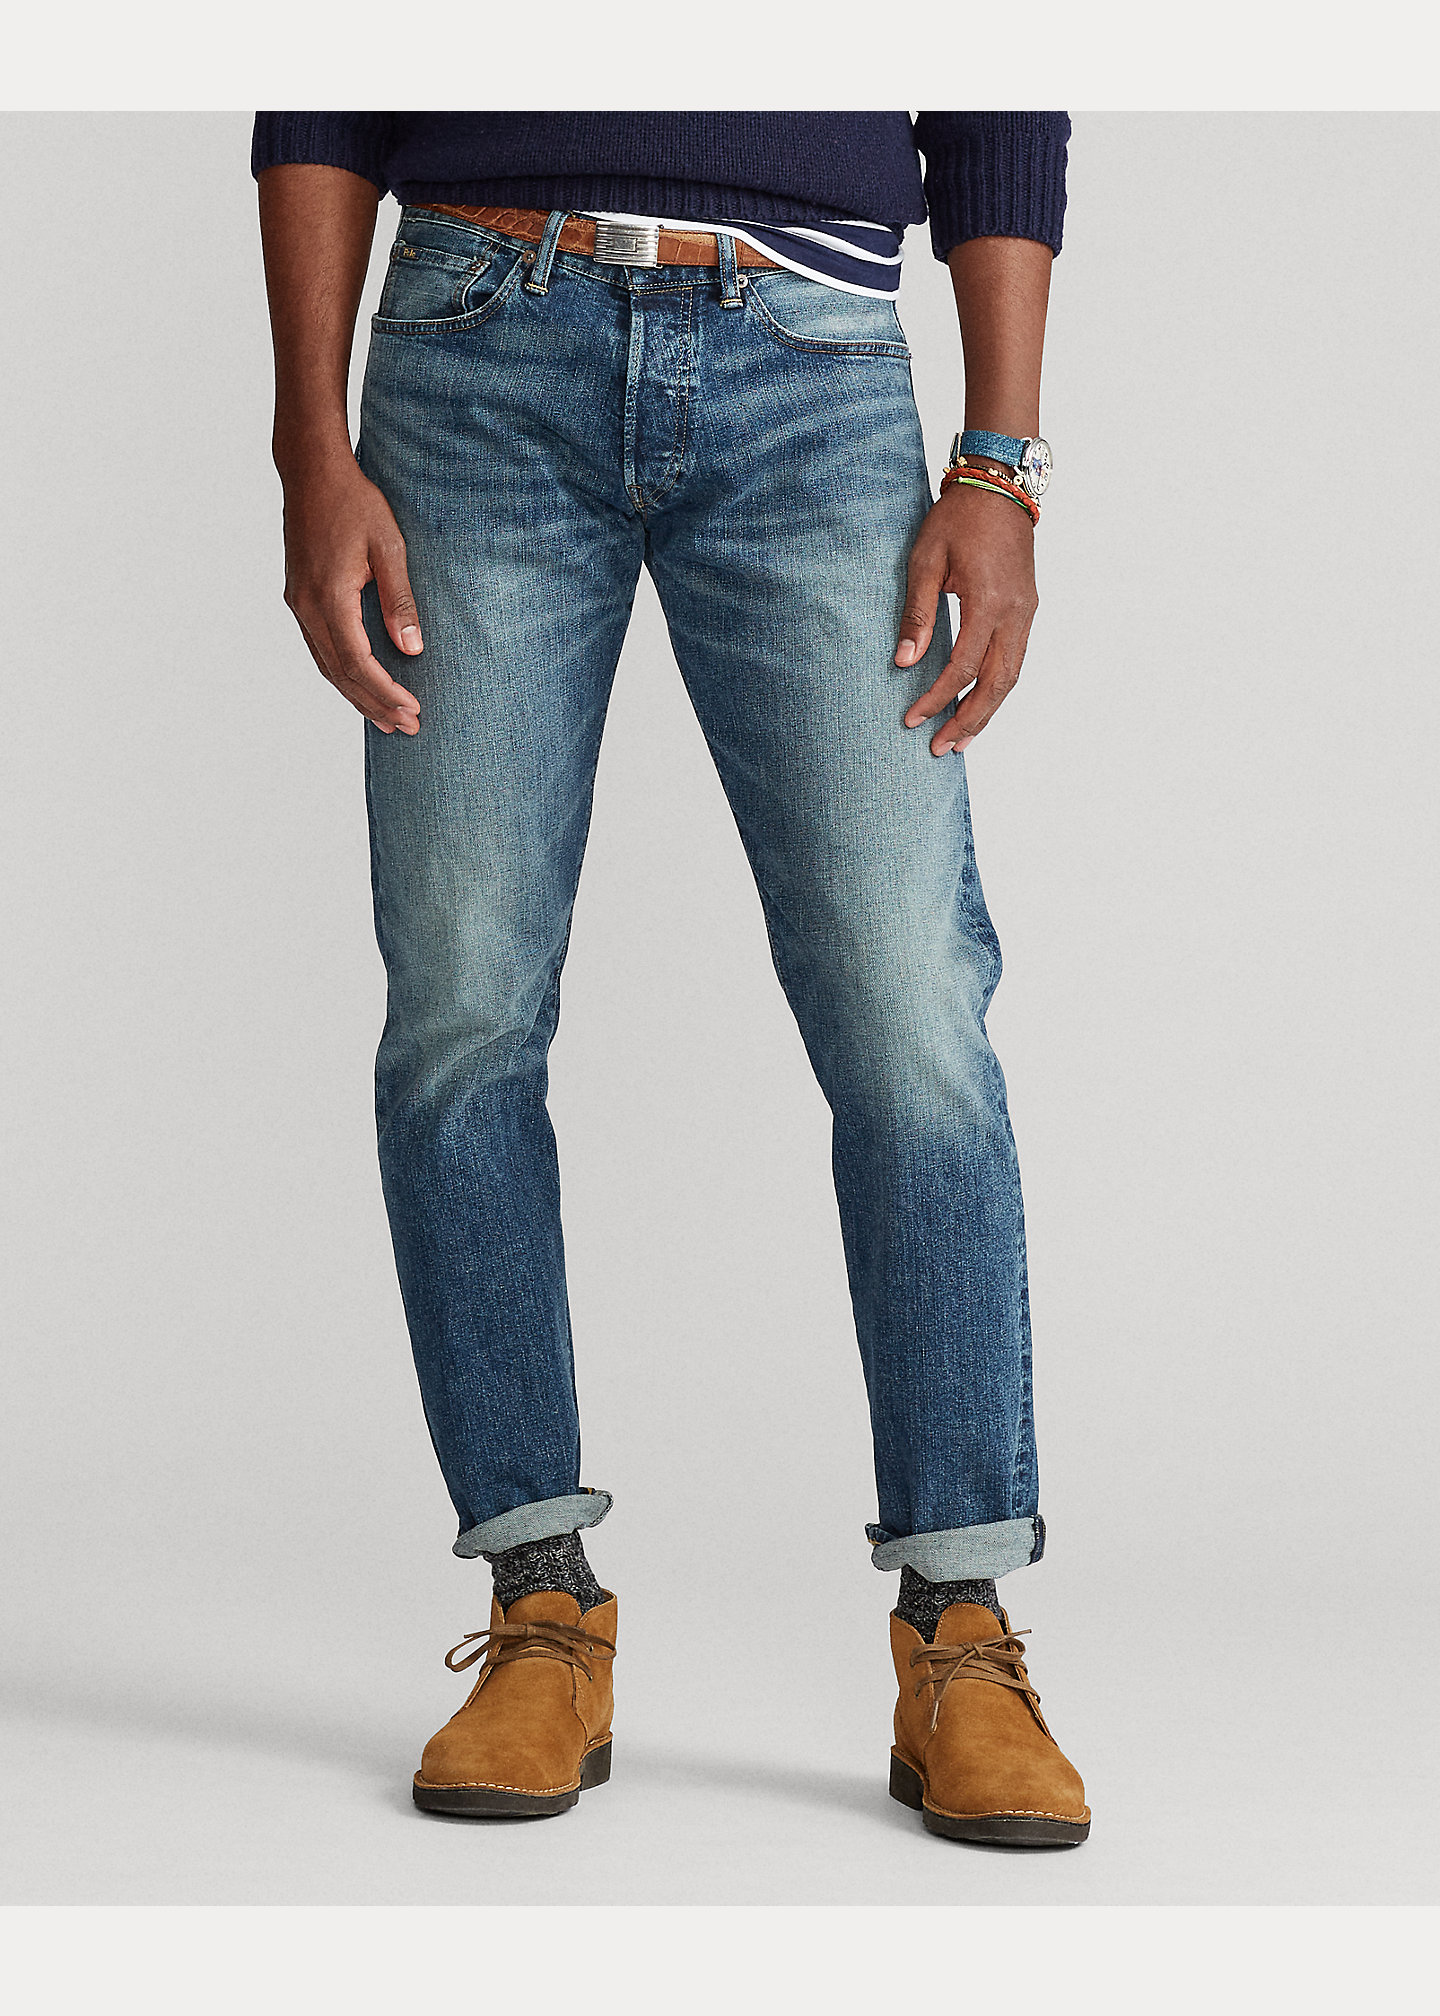 Size guide : How Ralph Lauren's pants fits ? - Graduate Store